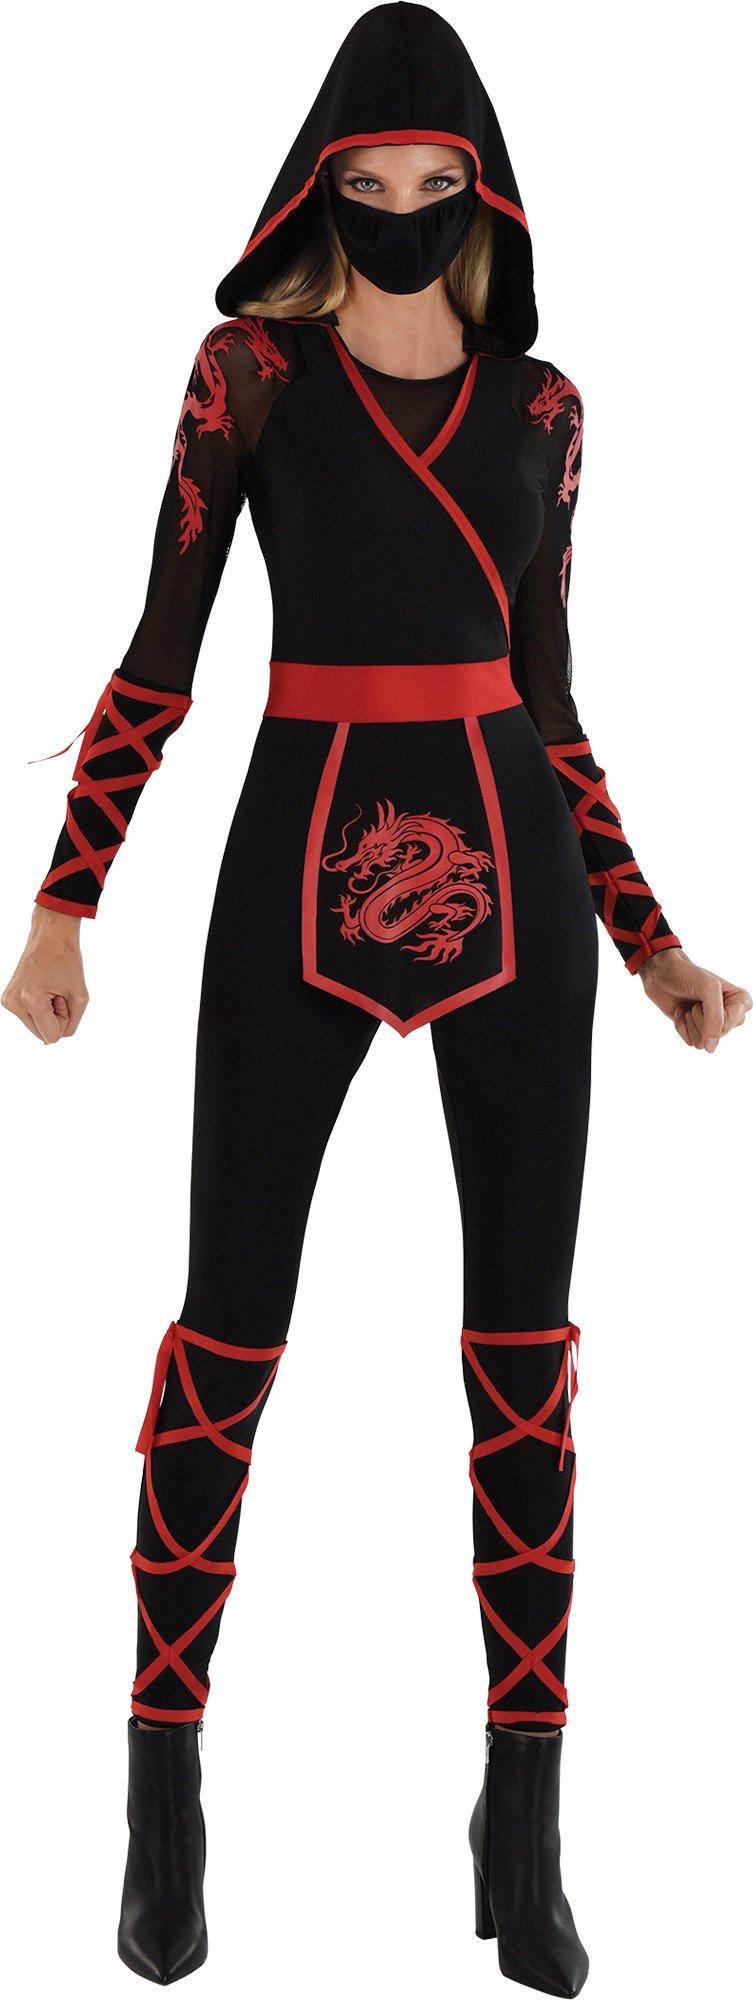 Black Ninja Costume for Girls